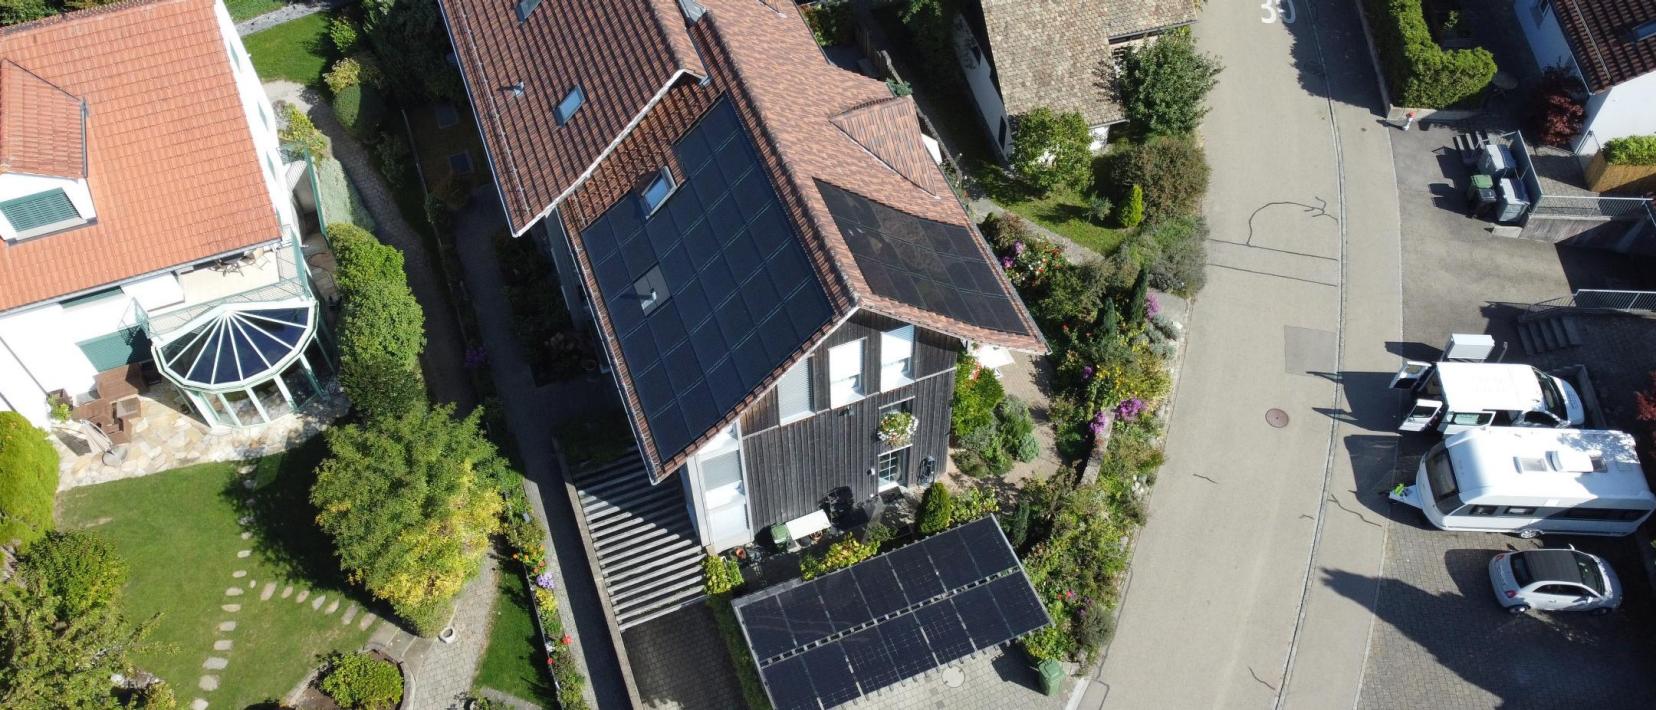 Auf einer Luftaufnahme sieht man verschiedene Häuser. Auf einigen Hausdächern befinden sich Solarzellen.